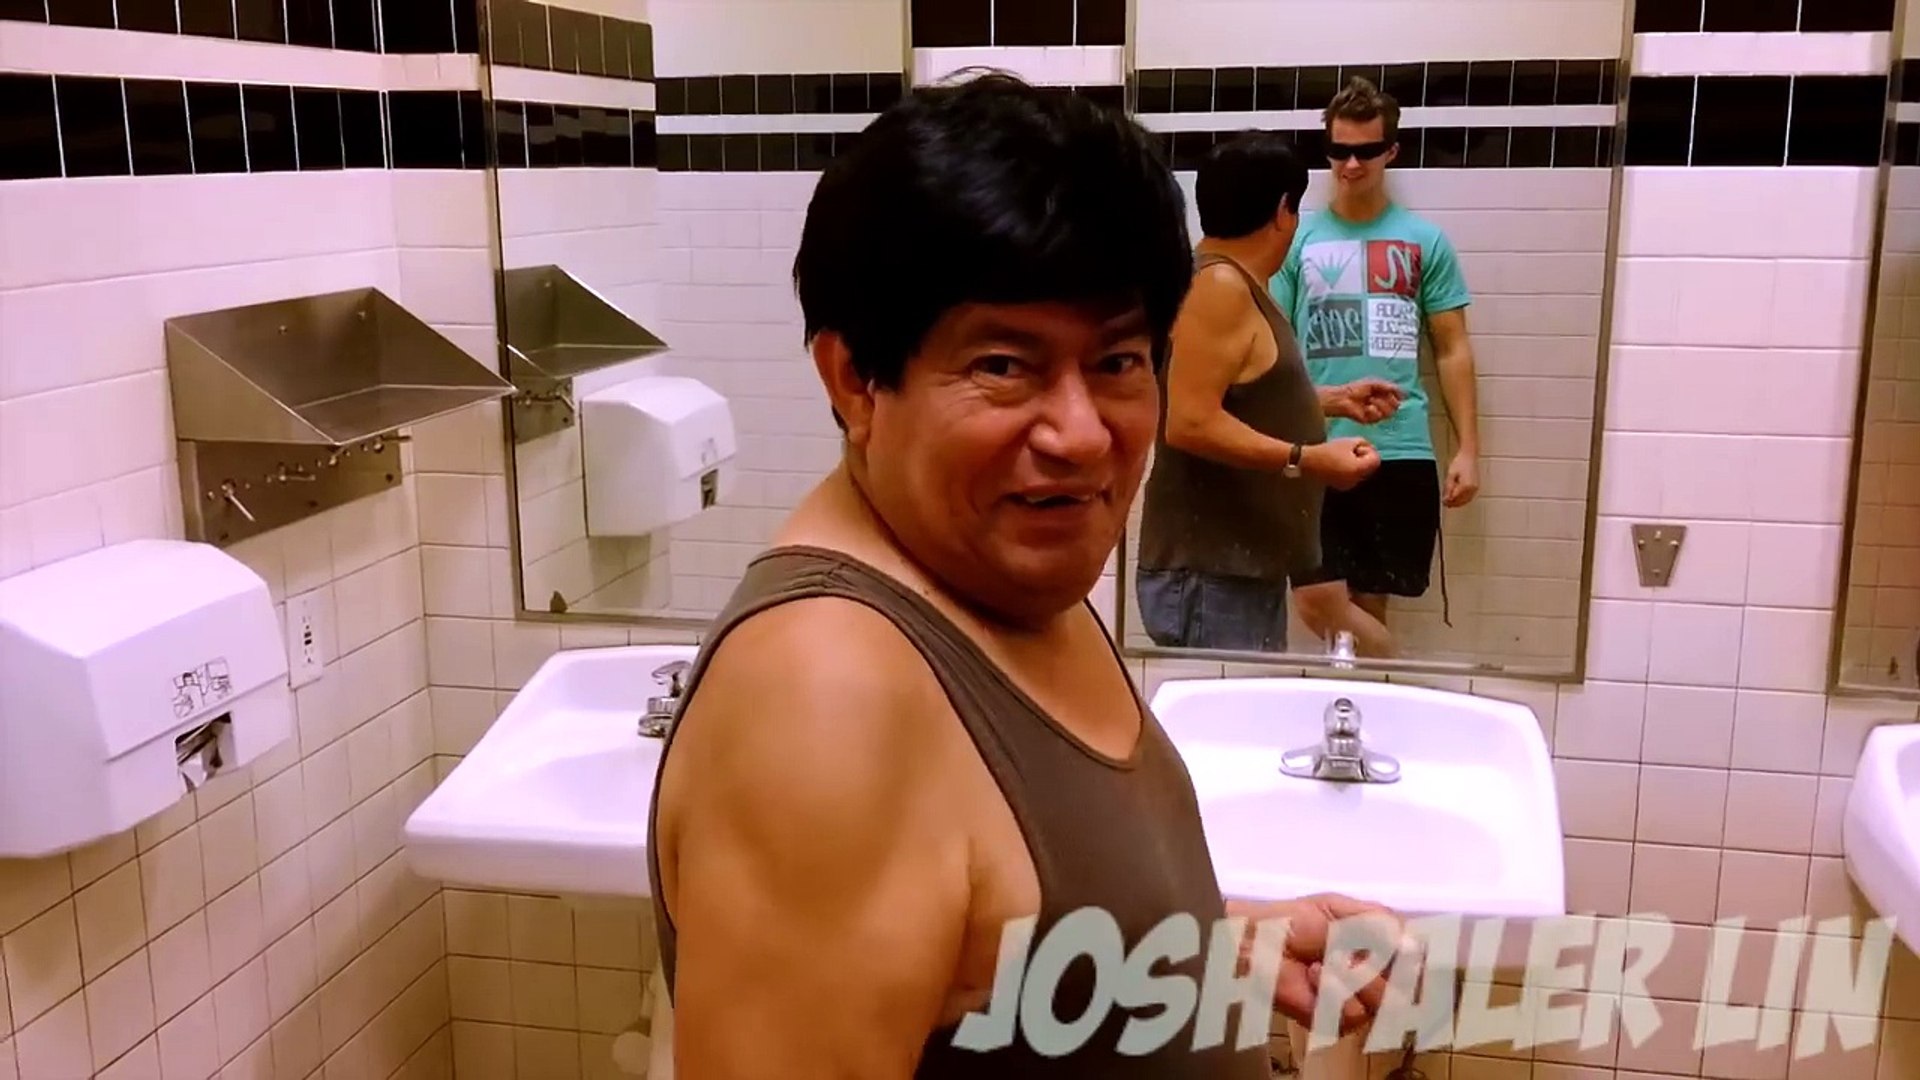 Il font l'amour dans les toilettes public (caméra cachée) - Vidéo  Dailymotion